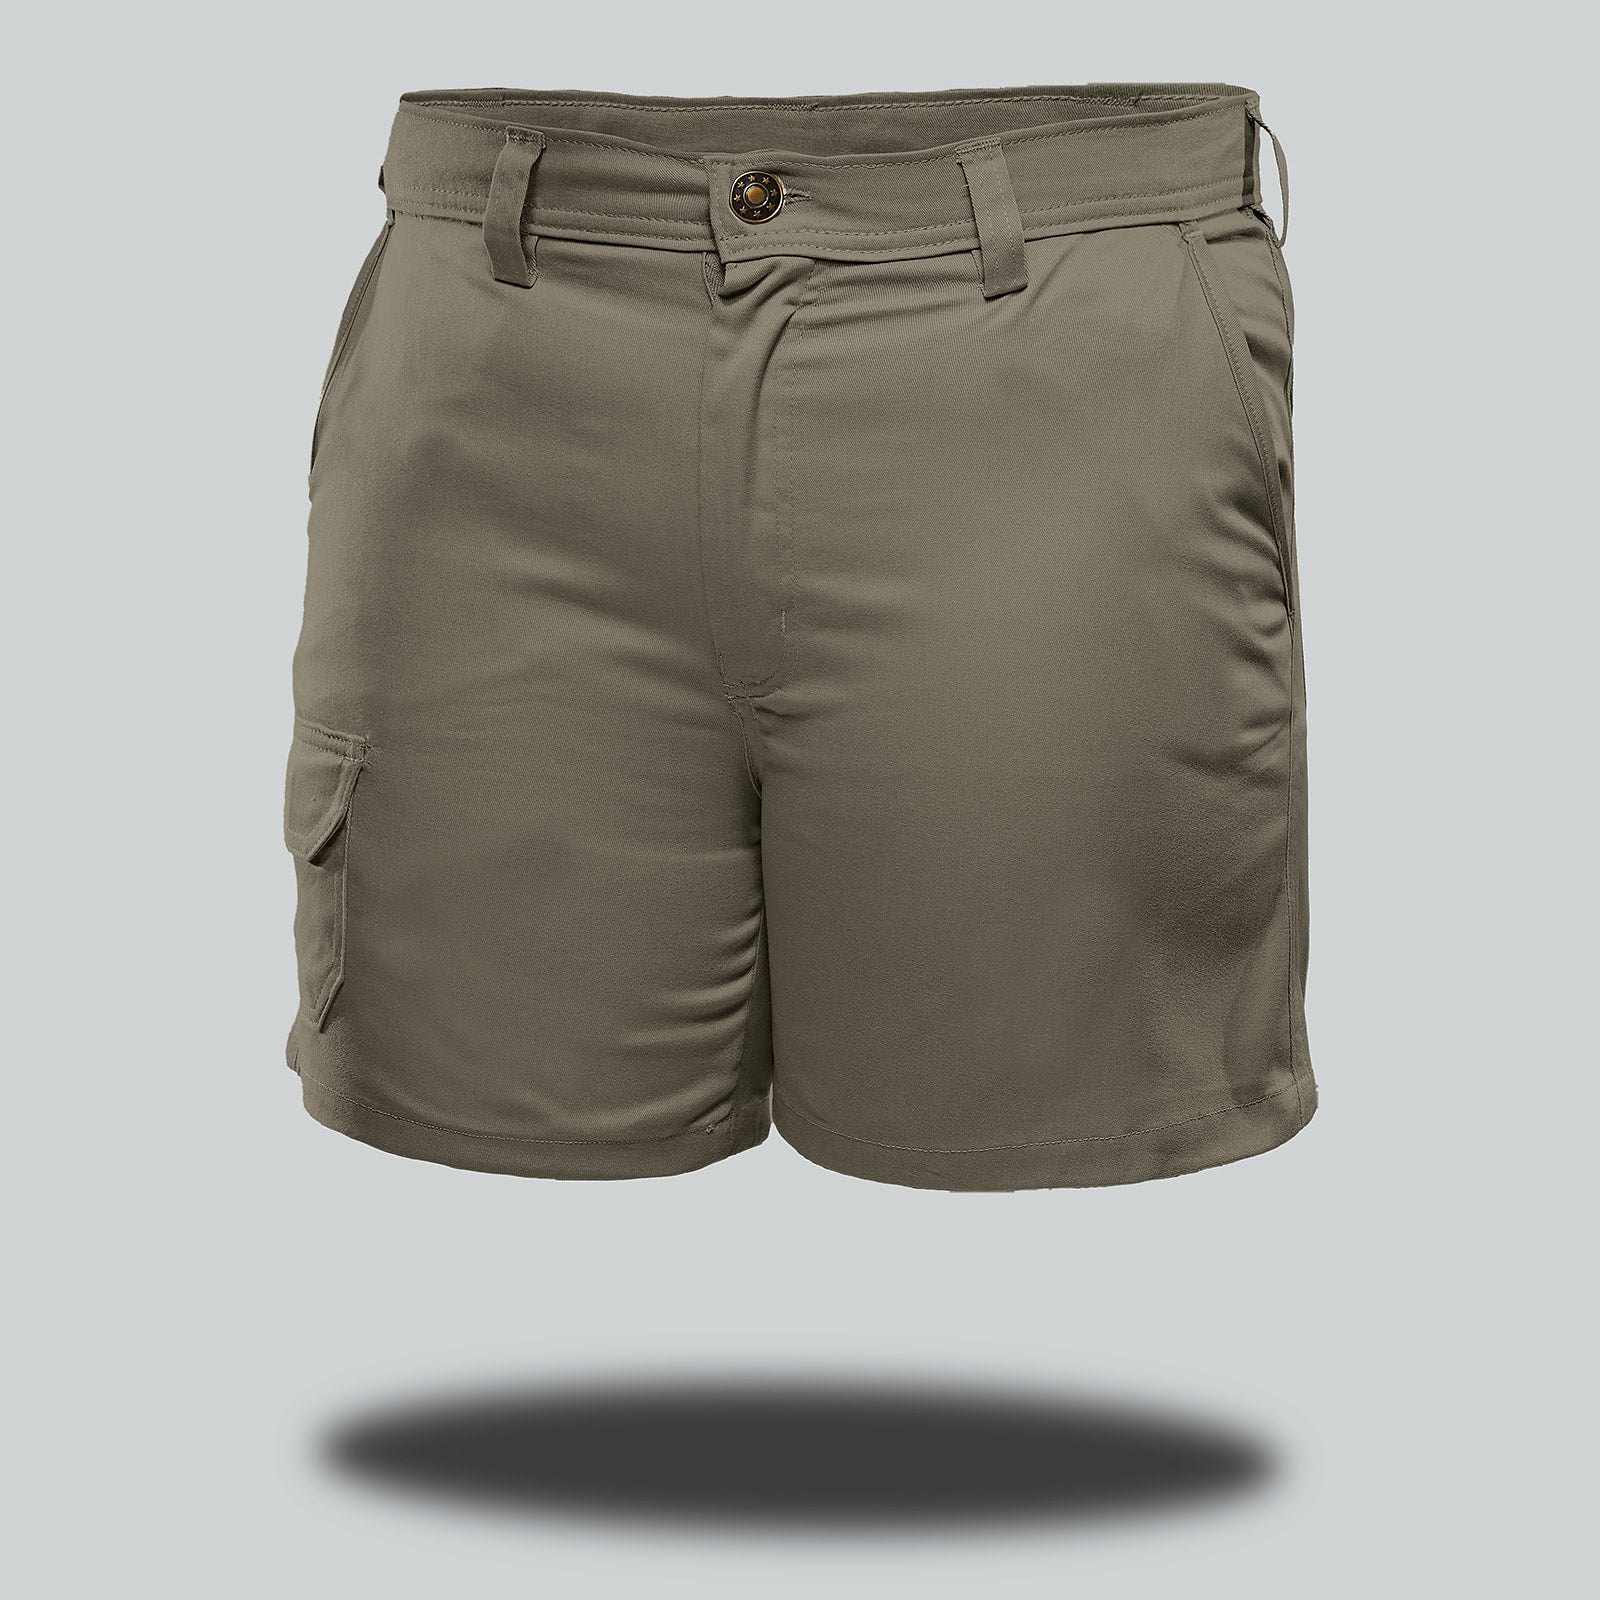 Rhino Shorts - Men's